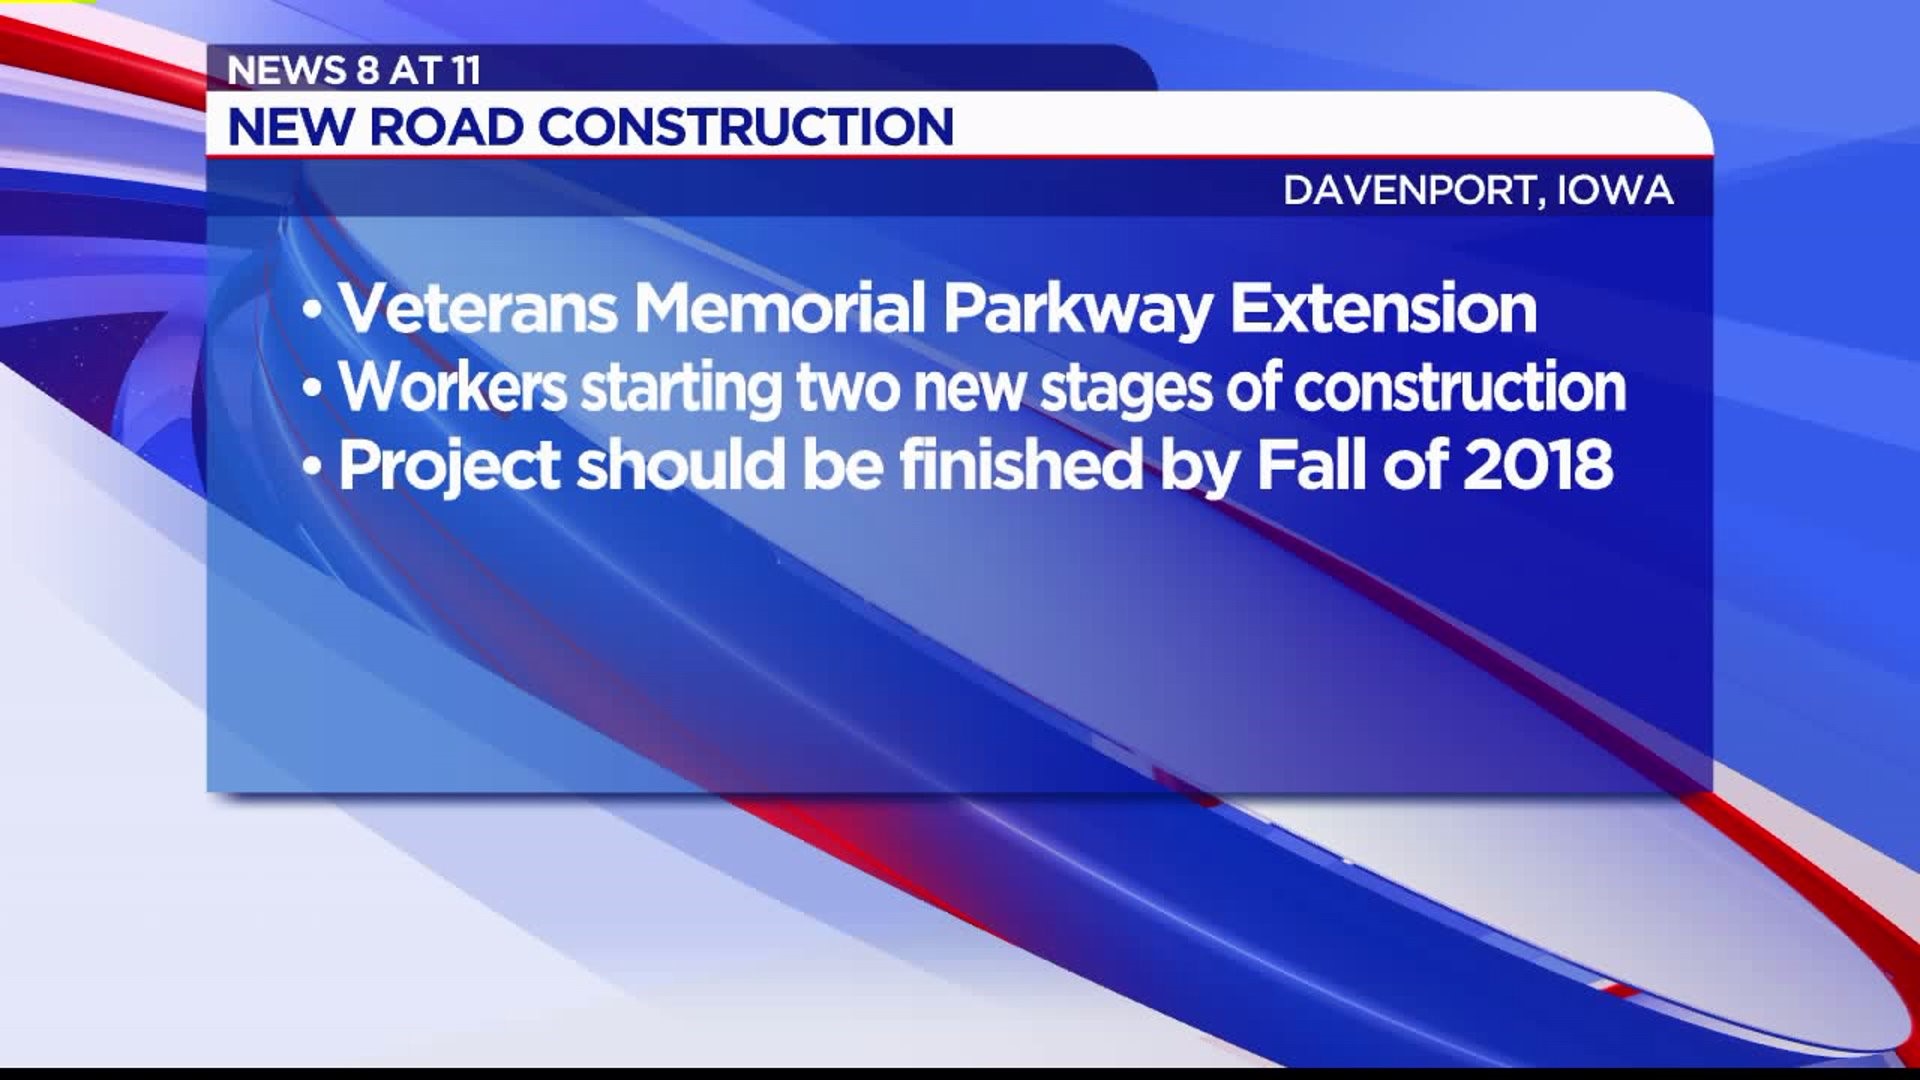 Work on Veterans Memorial Parkway